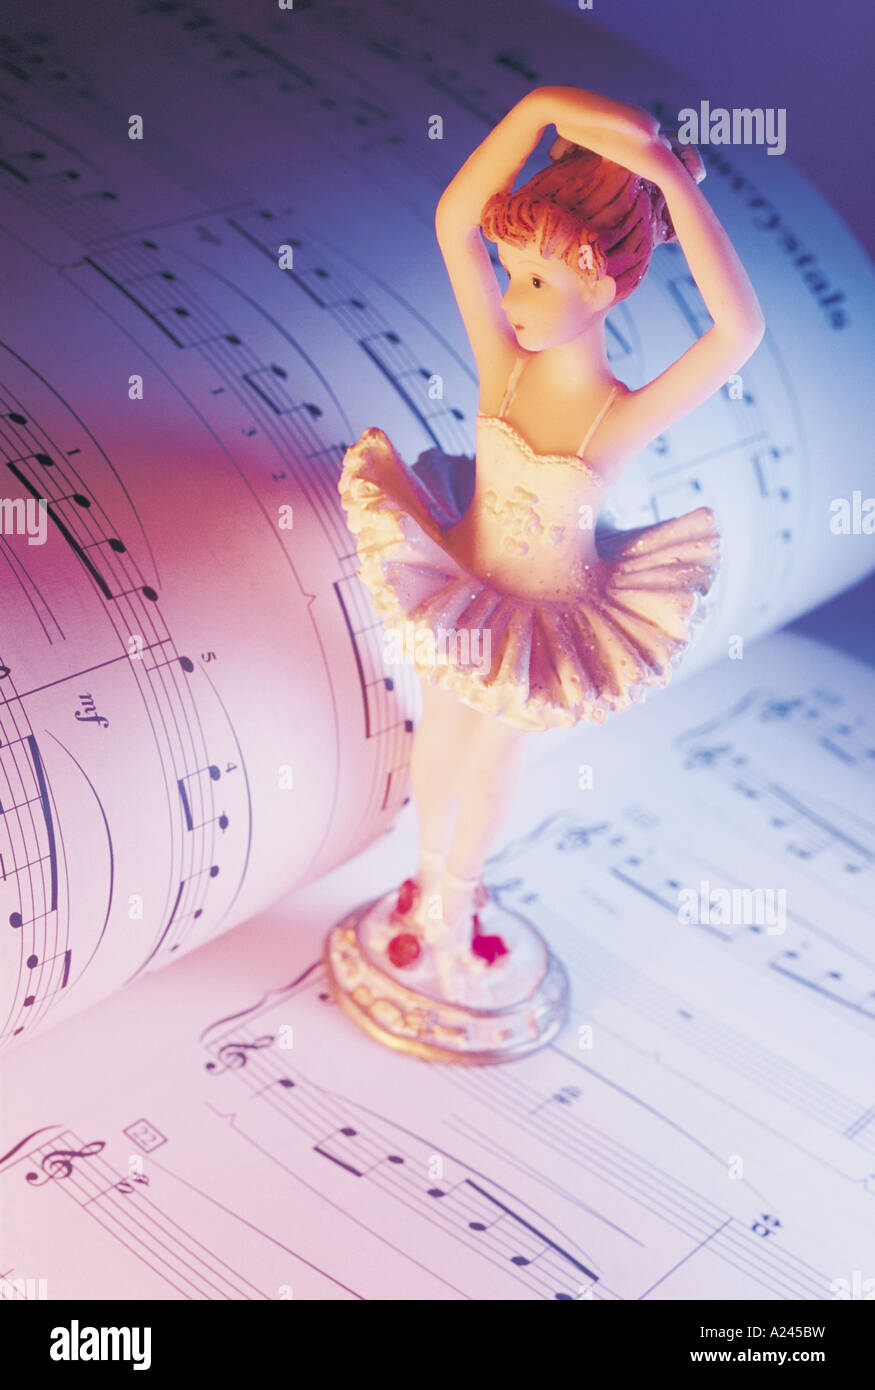 Ballerina Figurine on Music Score Stock Photo